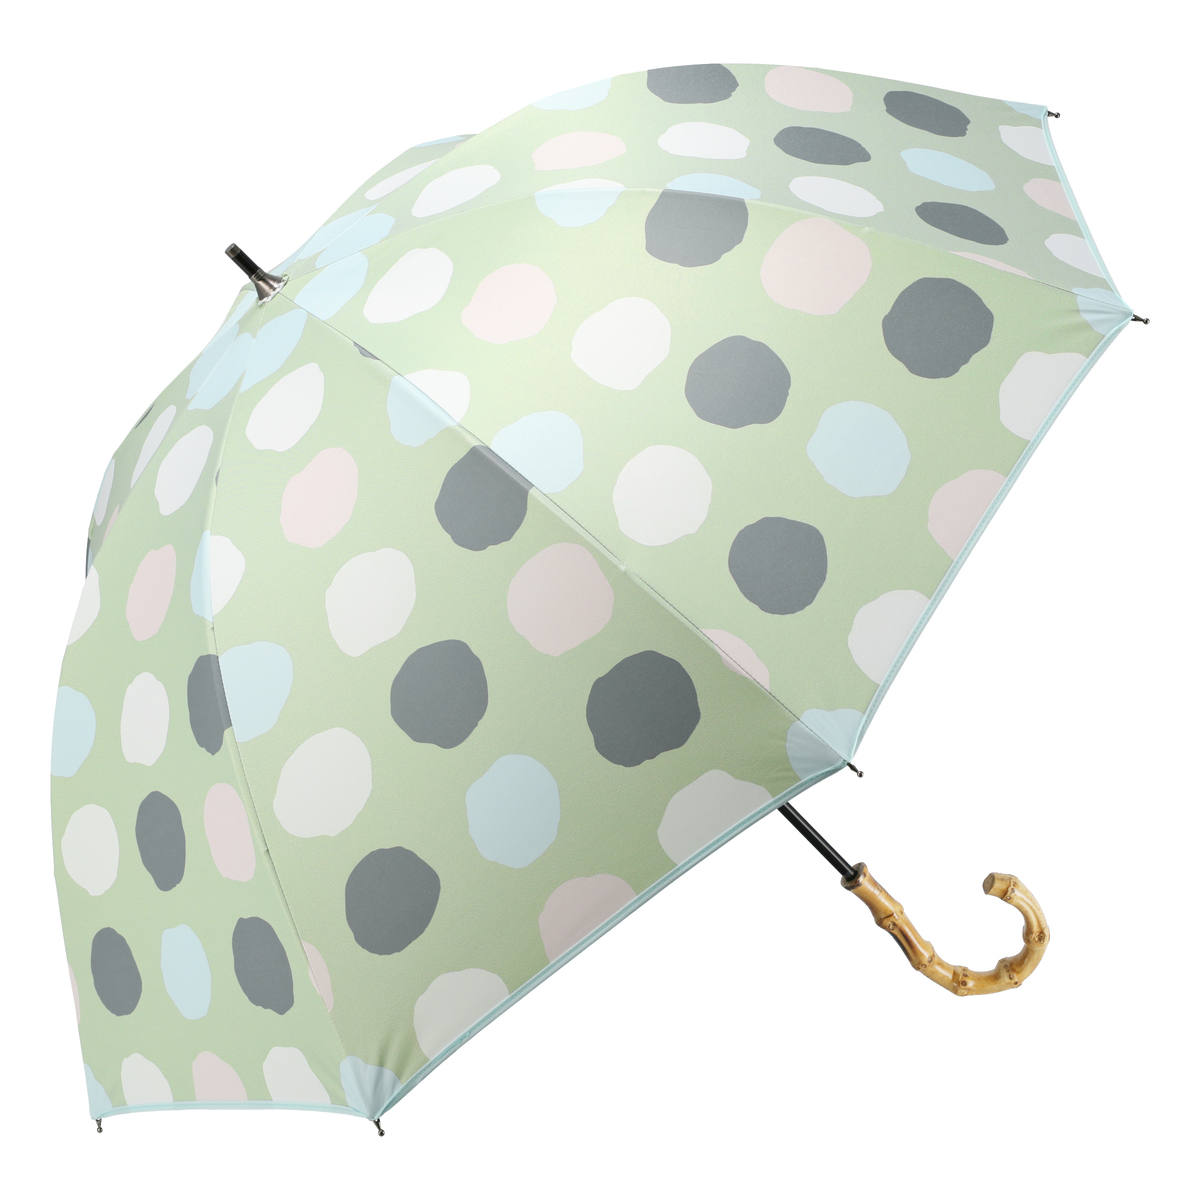  ルナジュメール UV+1級遮光+晴雨兼用 水玉ショート傘  グリーン